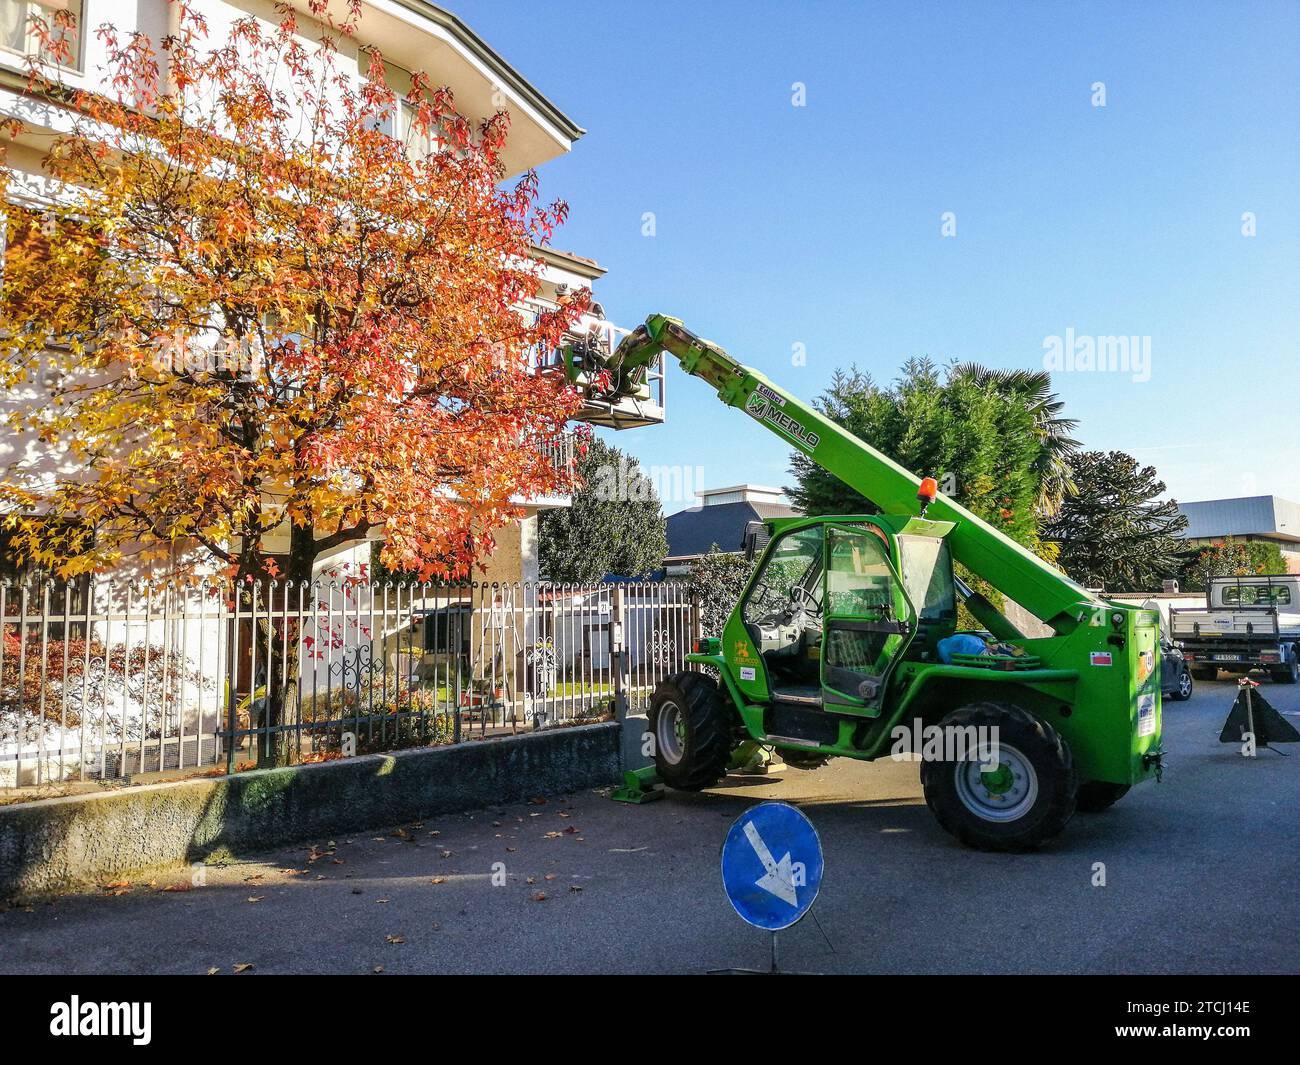 Italy, Casorezzo, crane, work in progress Stock Photo